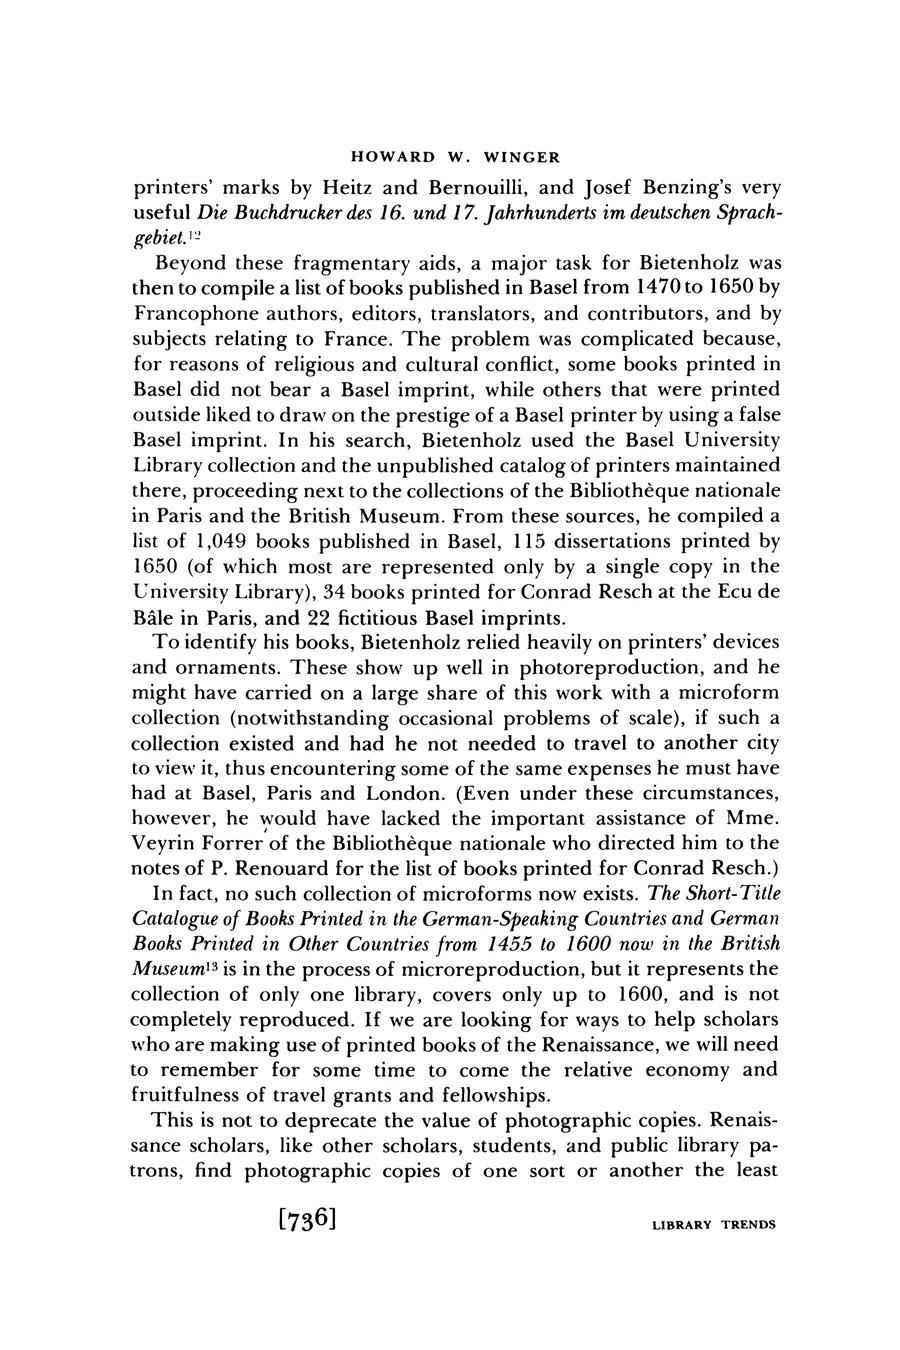 HOWARD W. WINGER printers' marks by Heitz and Bernouilli, and Josef Benzing's very useful Die Buchdrucker des 16. und 17. Jahrhunderts im deutschen Sprachgebiet.